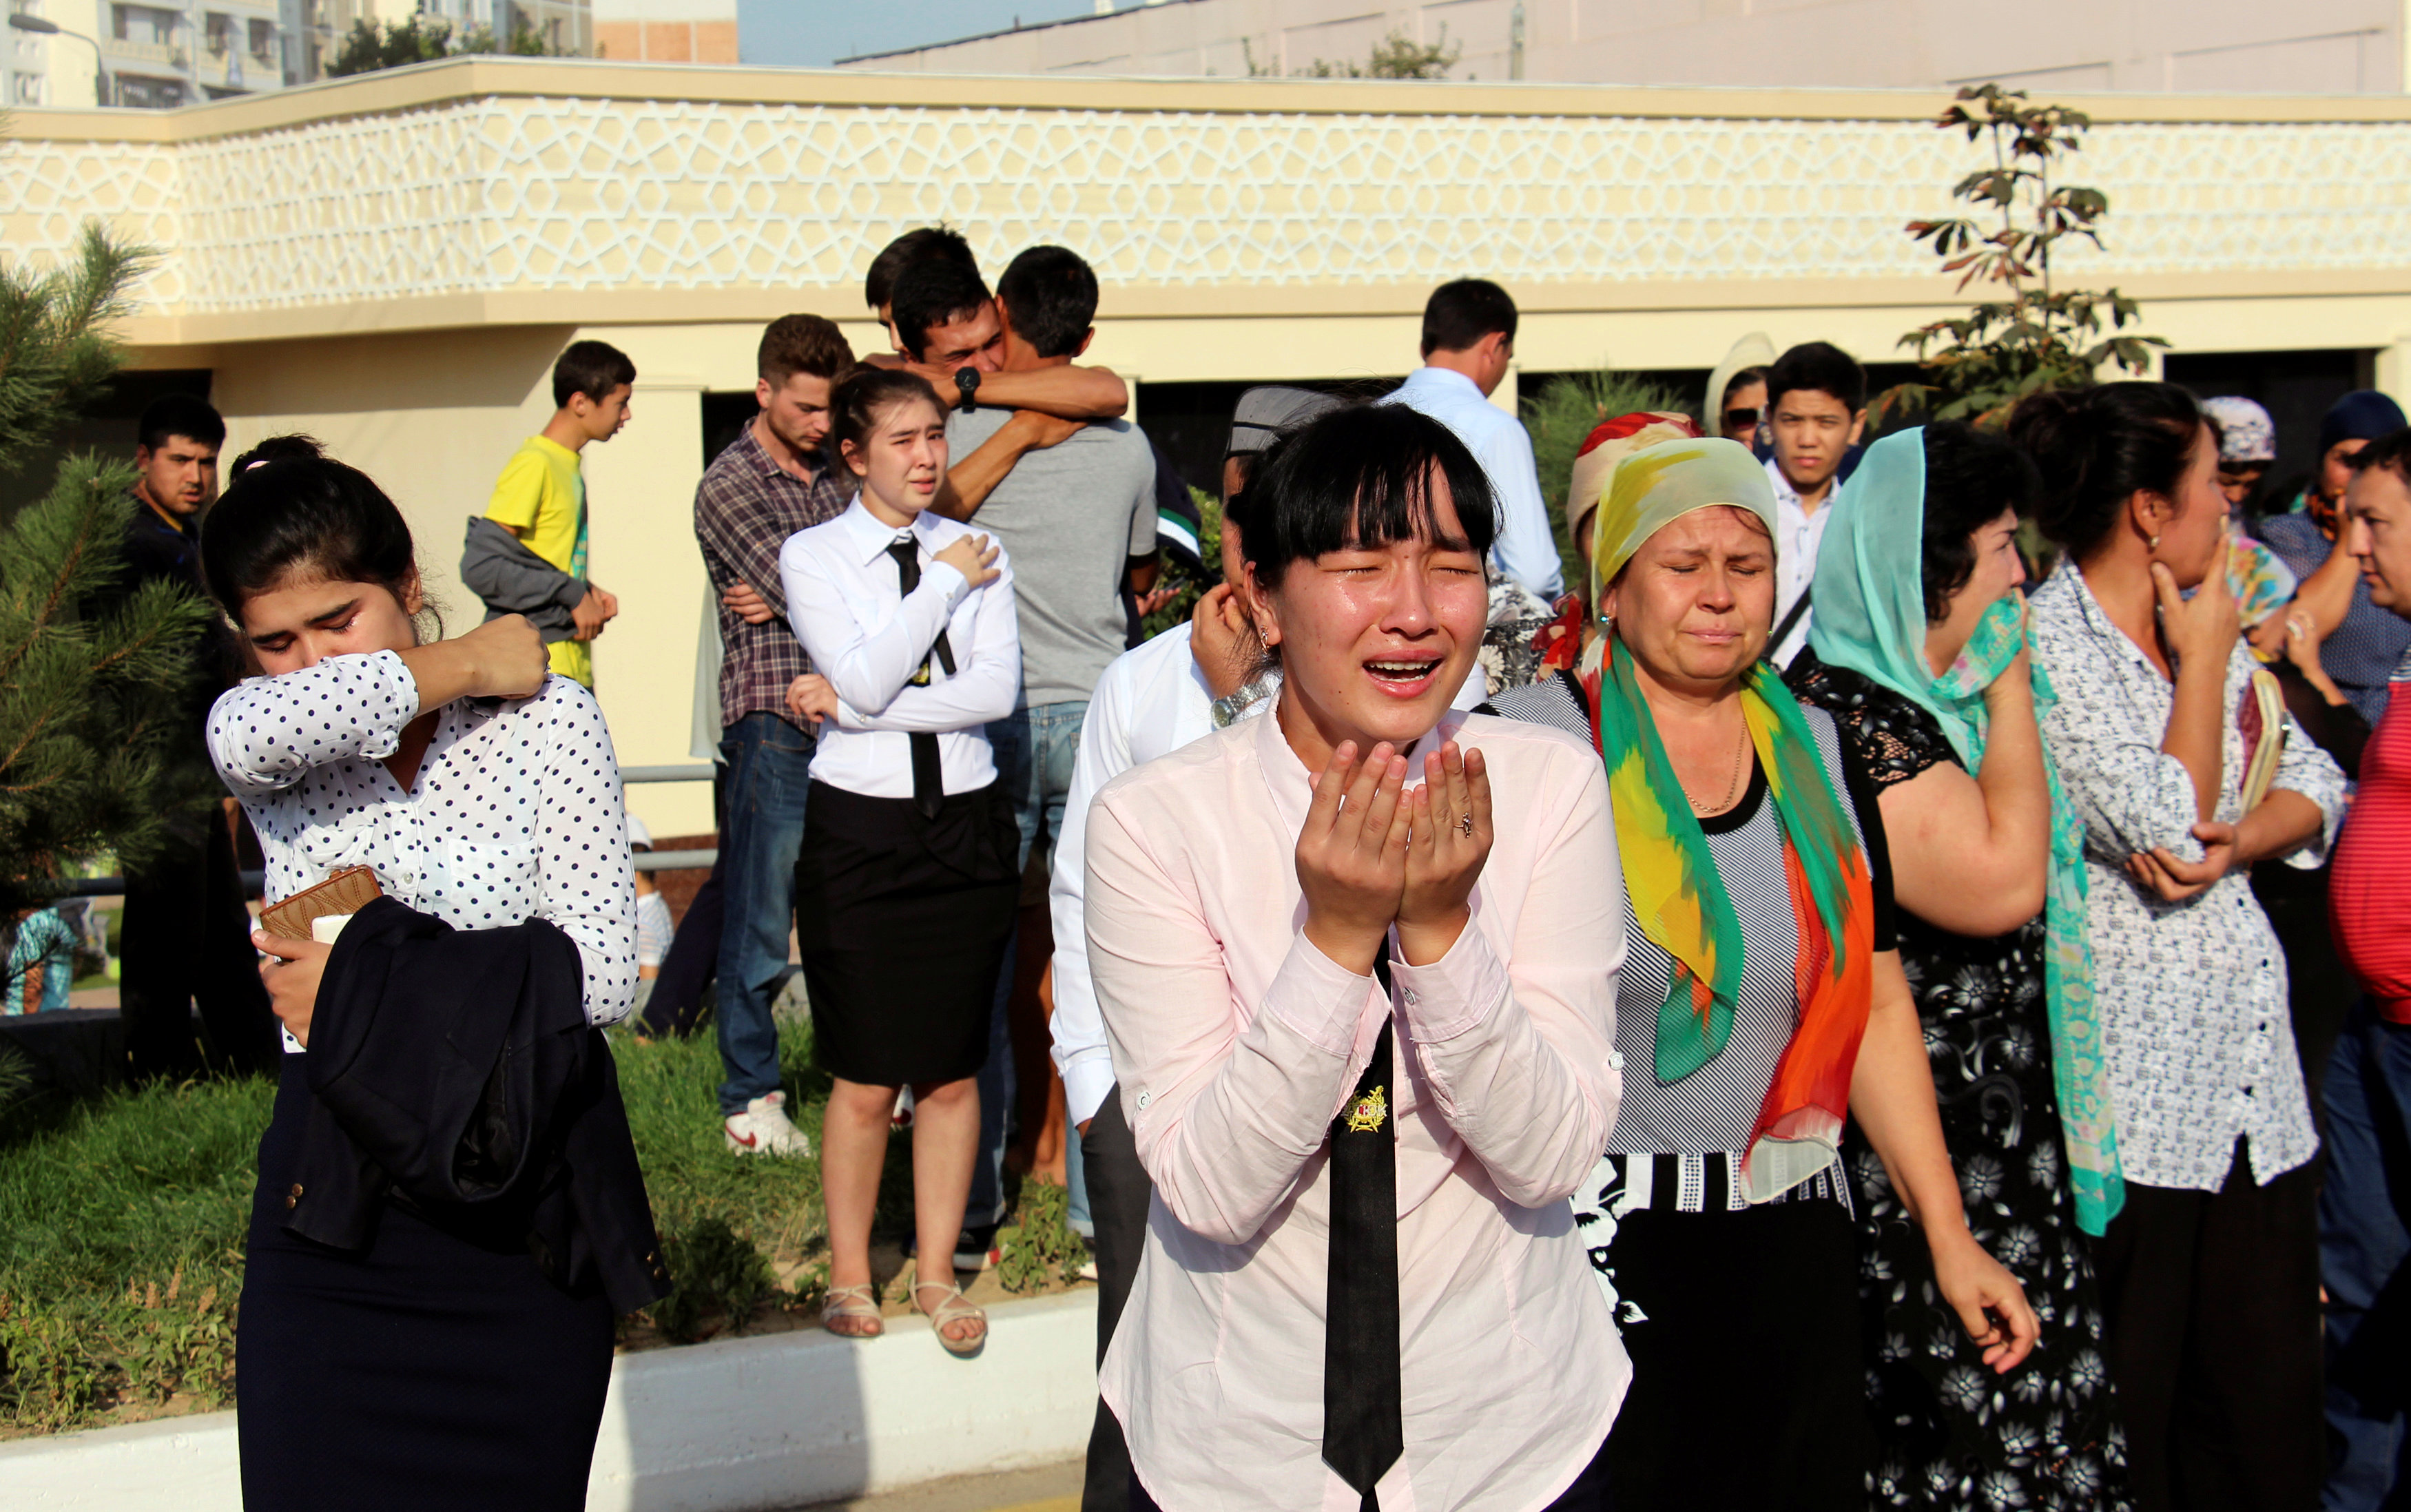 Узбекистан мусульманская. Похороны Ислама Каримова президента Узбекистана. Узбекистан, Самарканд, Каримов.